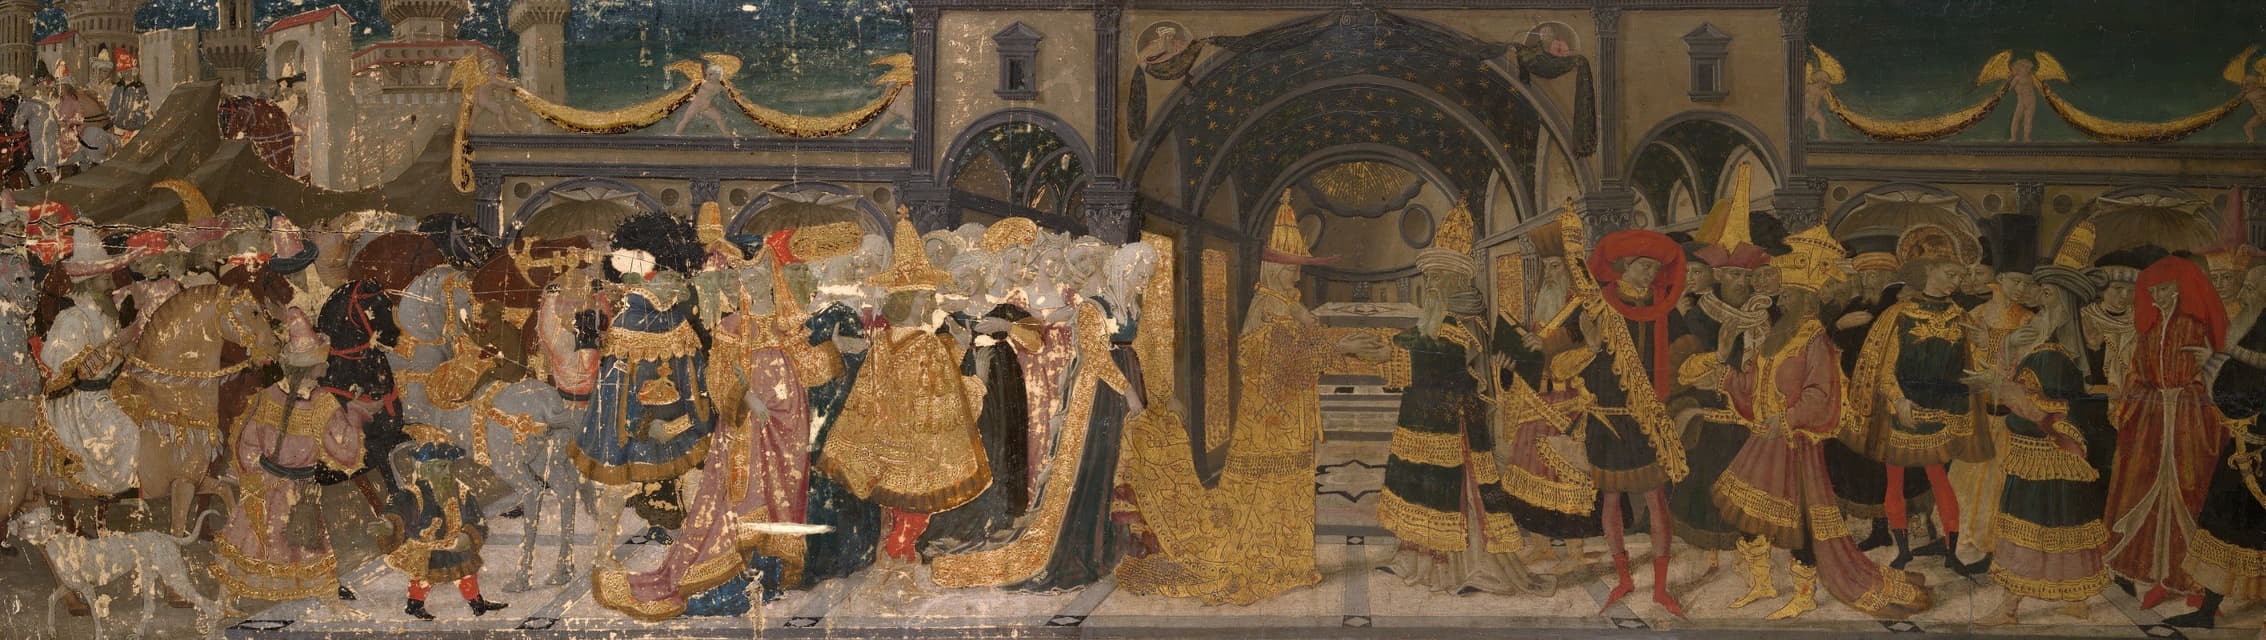 Apollonio di Giovanni - Meeting of Solomon and the Queen of Sheba